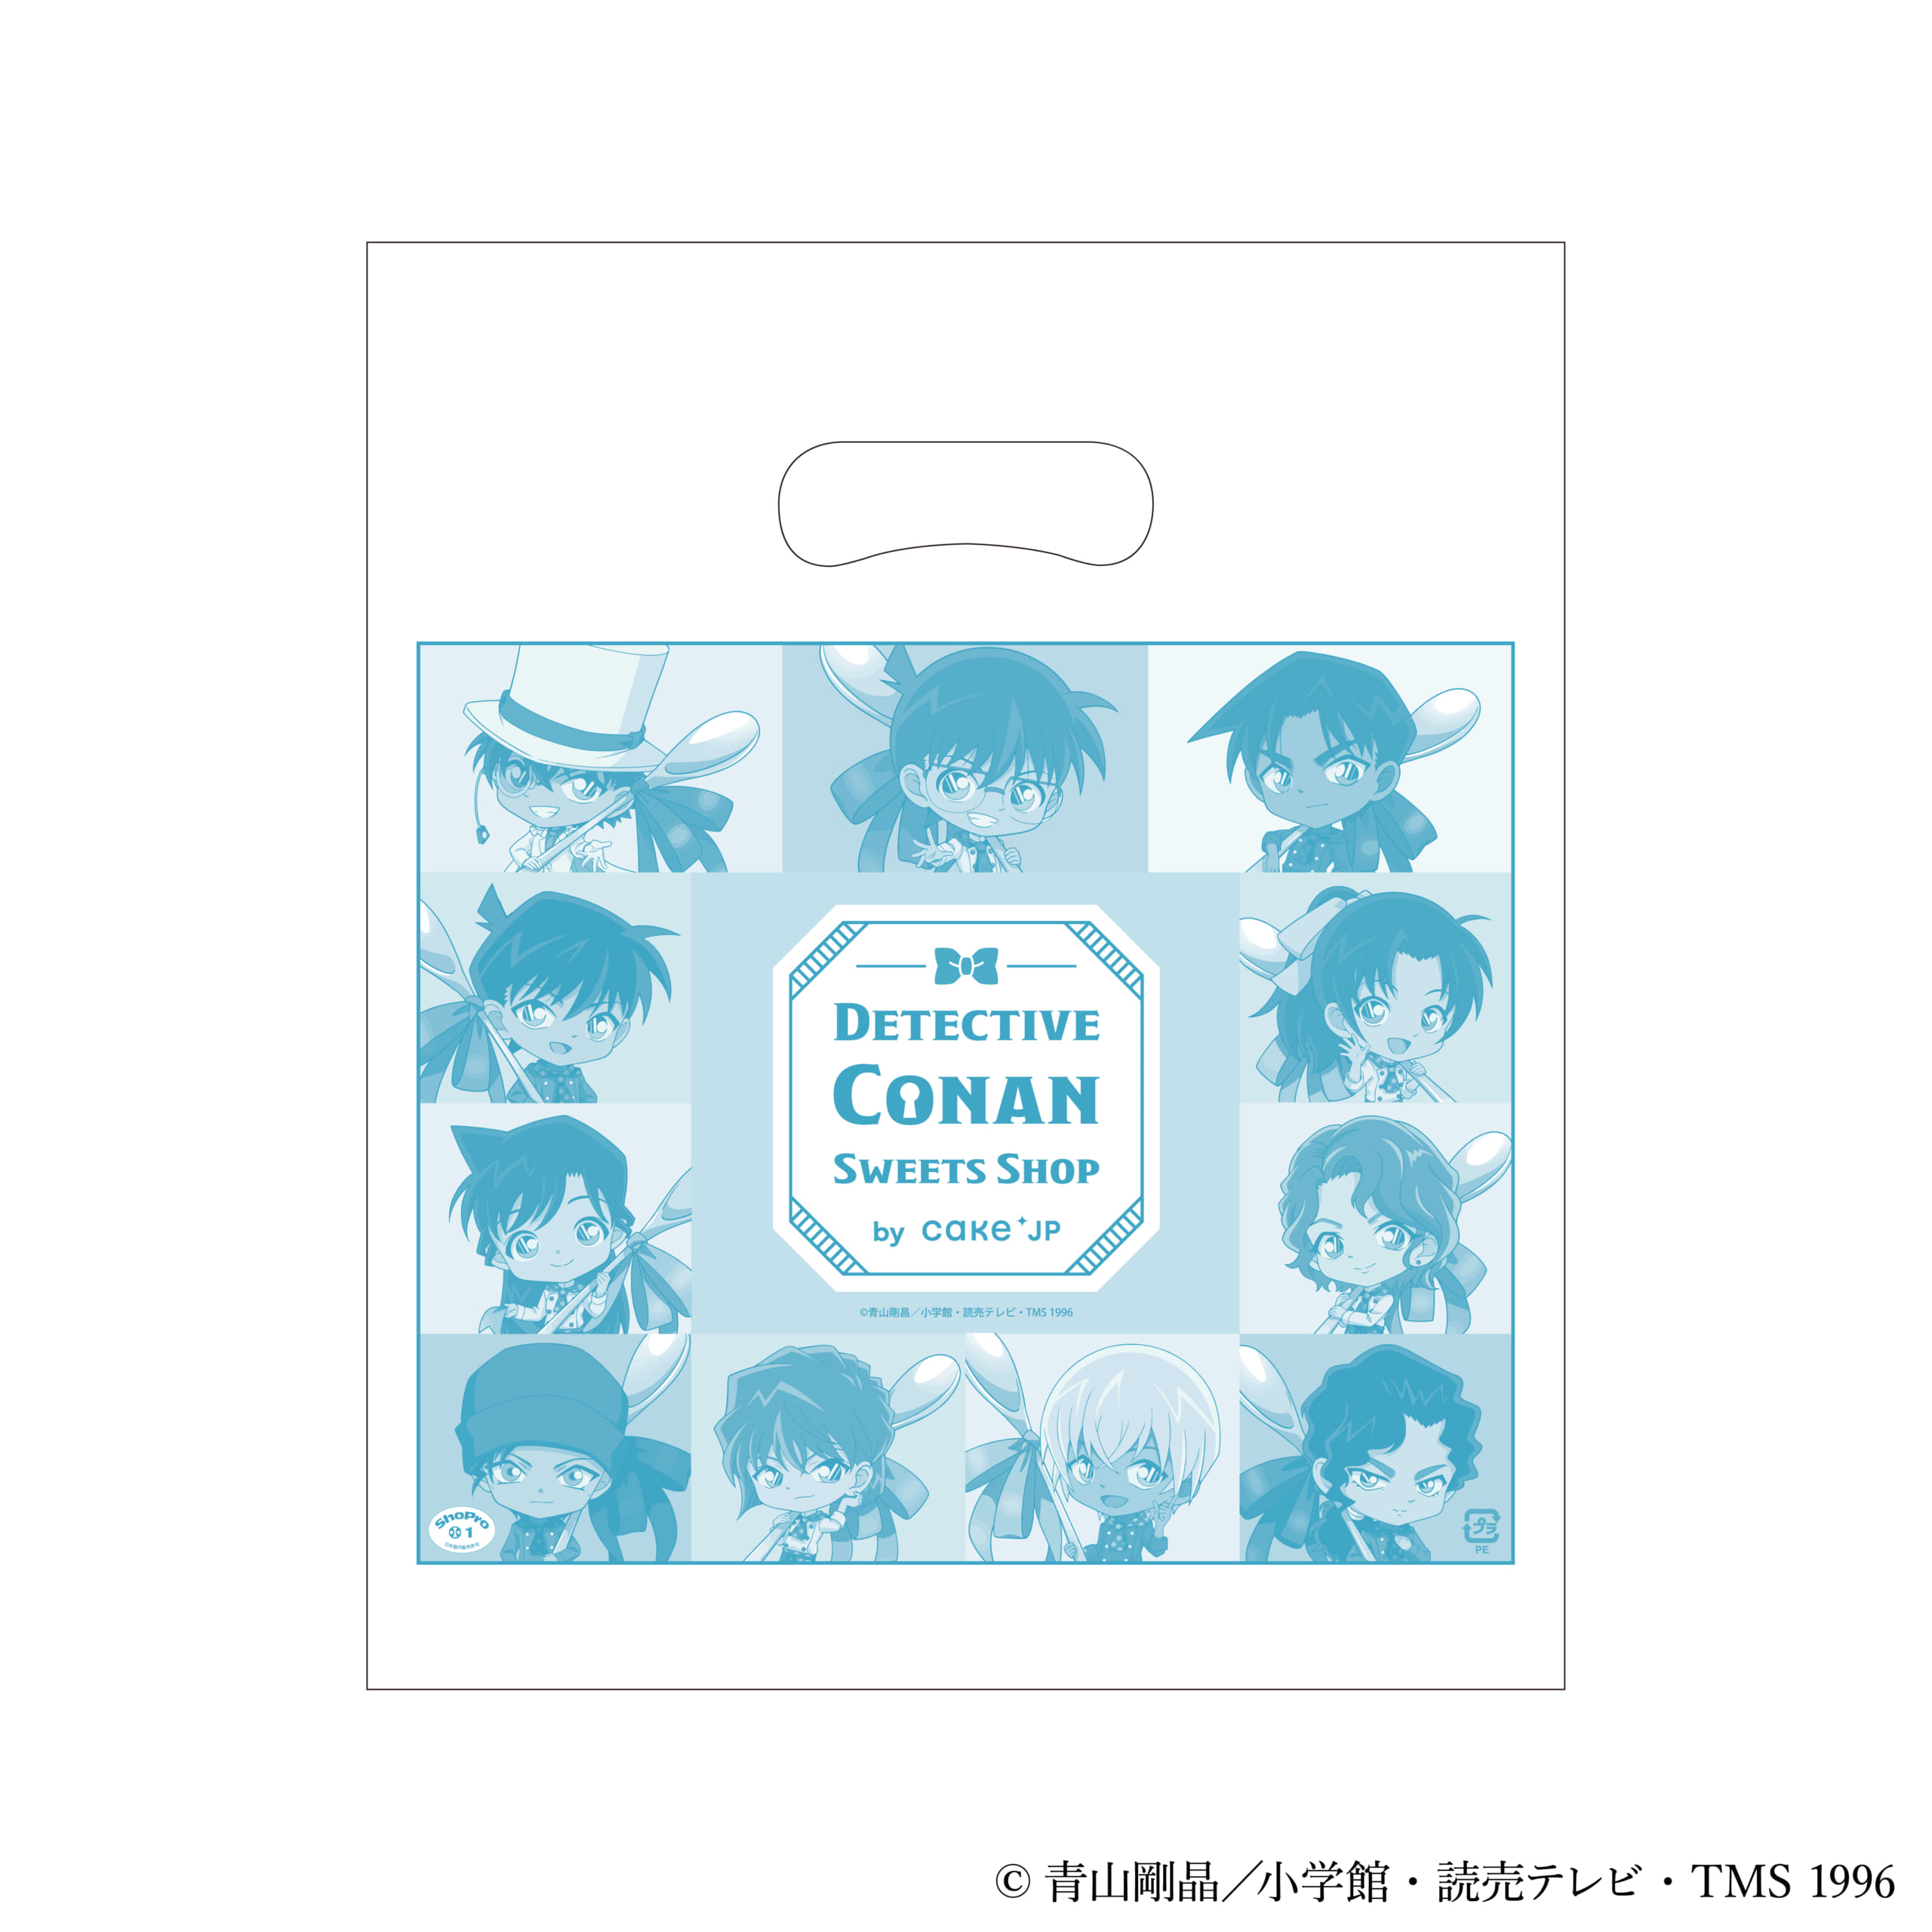 「名探偵コナン×Cake.jp」Detective Conan Sweets Shop by Cake.jp 限定ショッパー